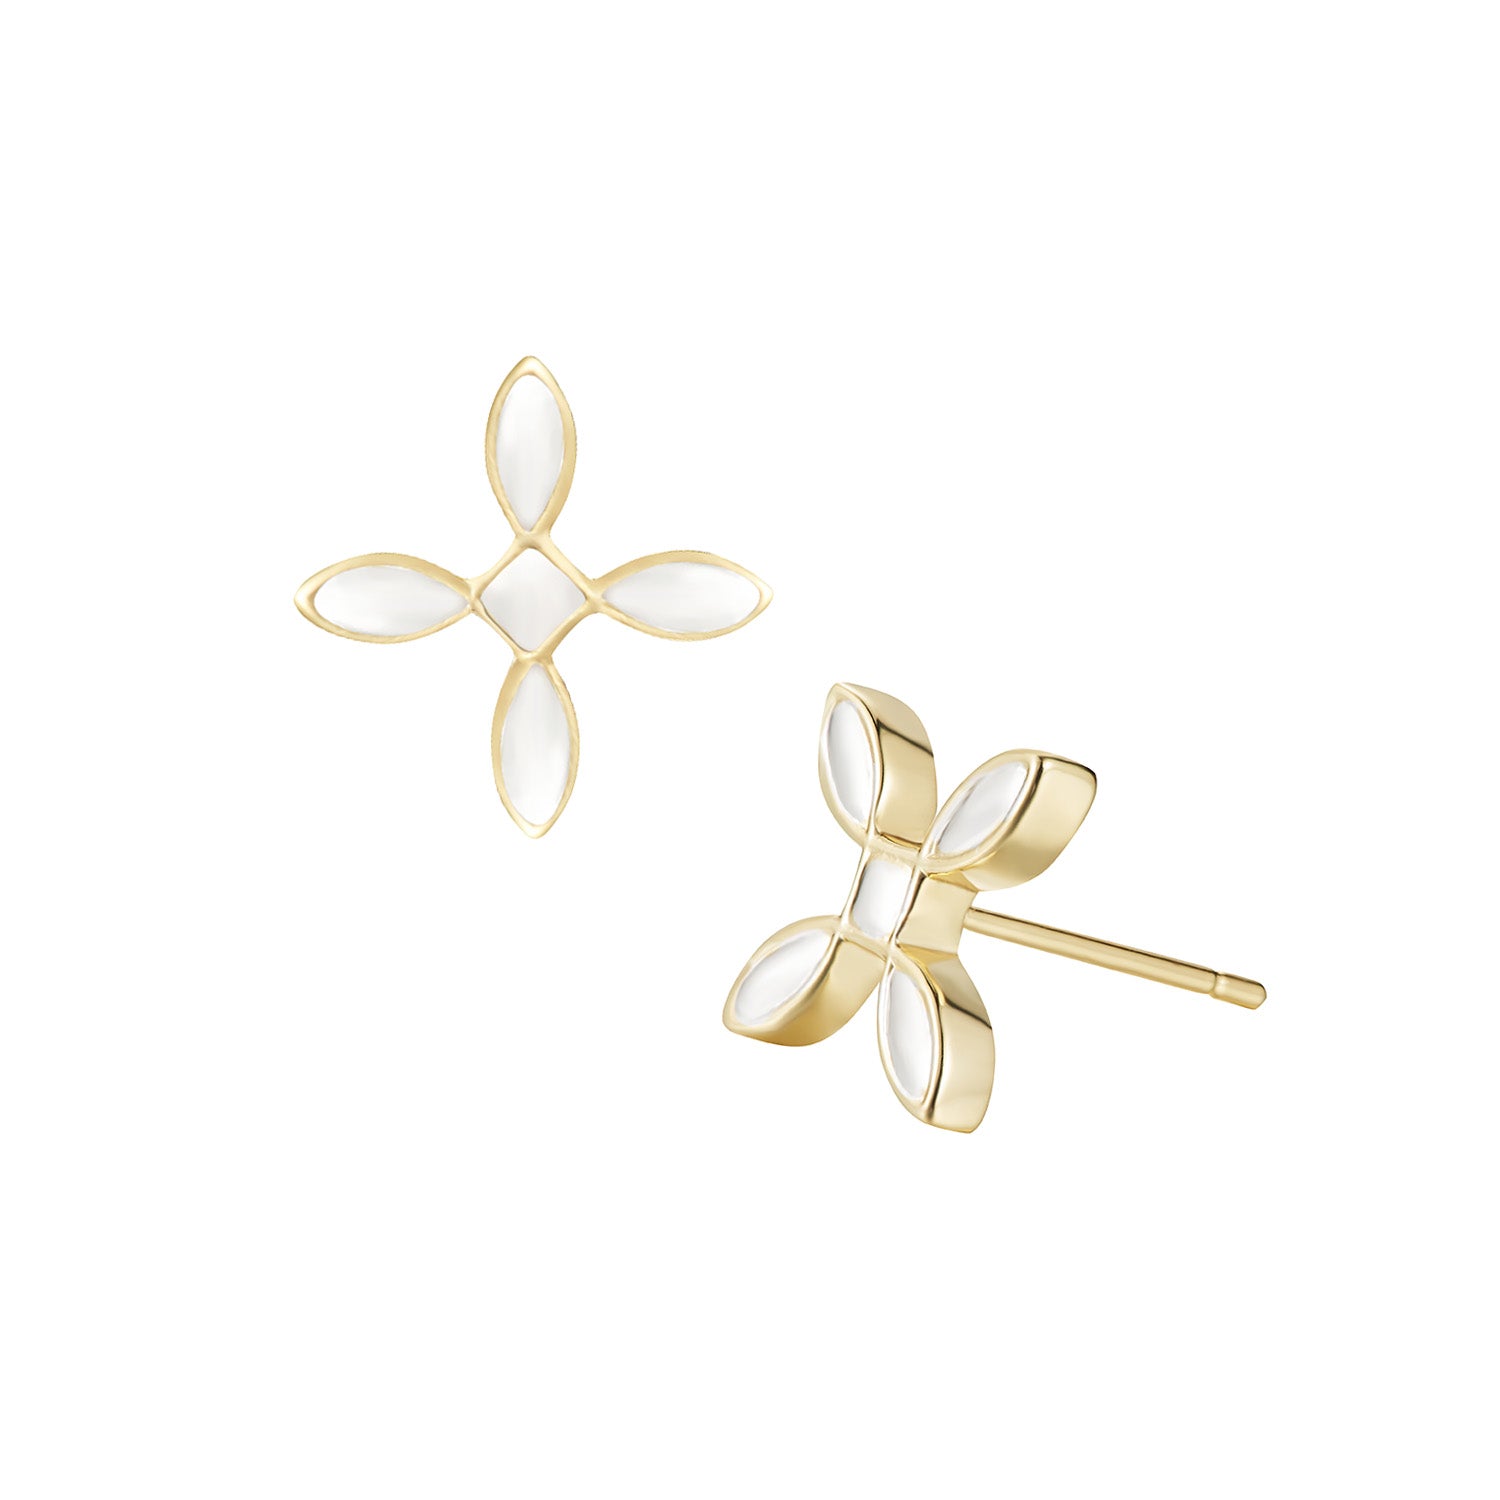 Enamel Cross Stud Earrings in Gold/Silver